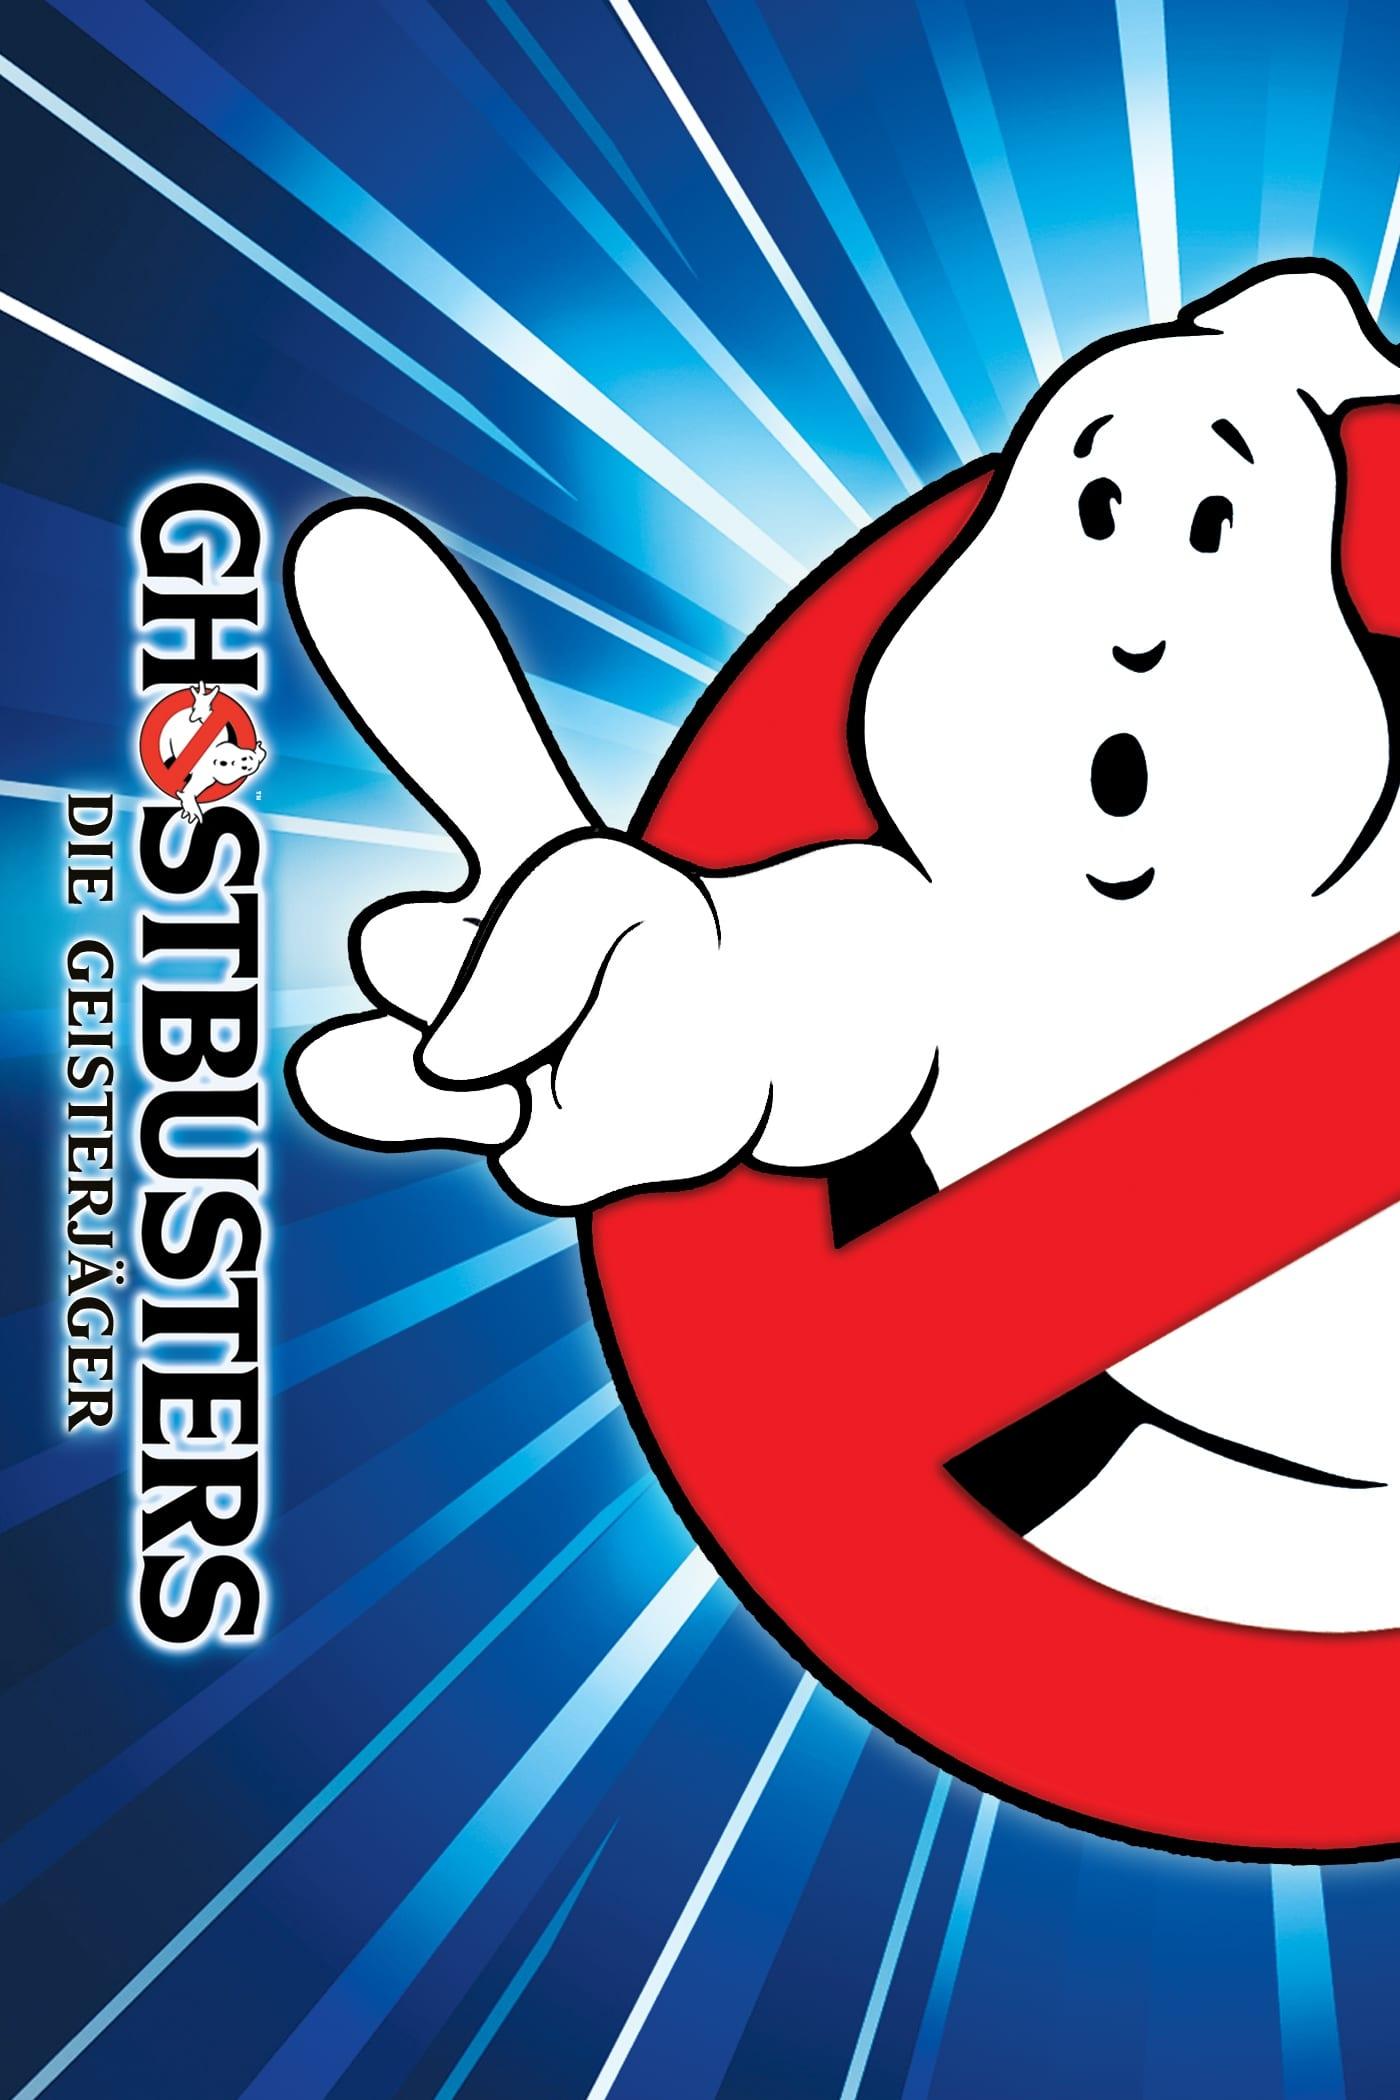 Ghostbusters - Die Geisterjäger poster